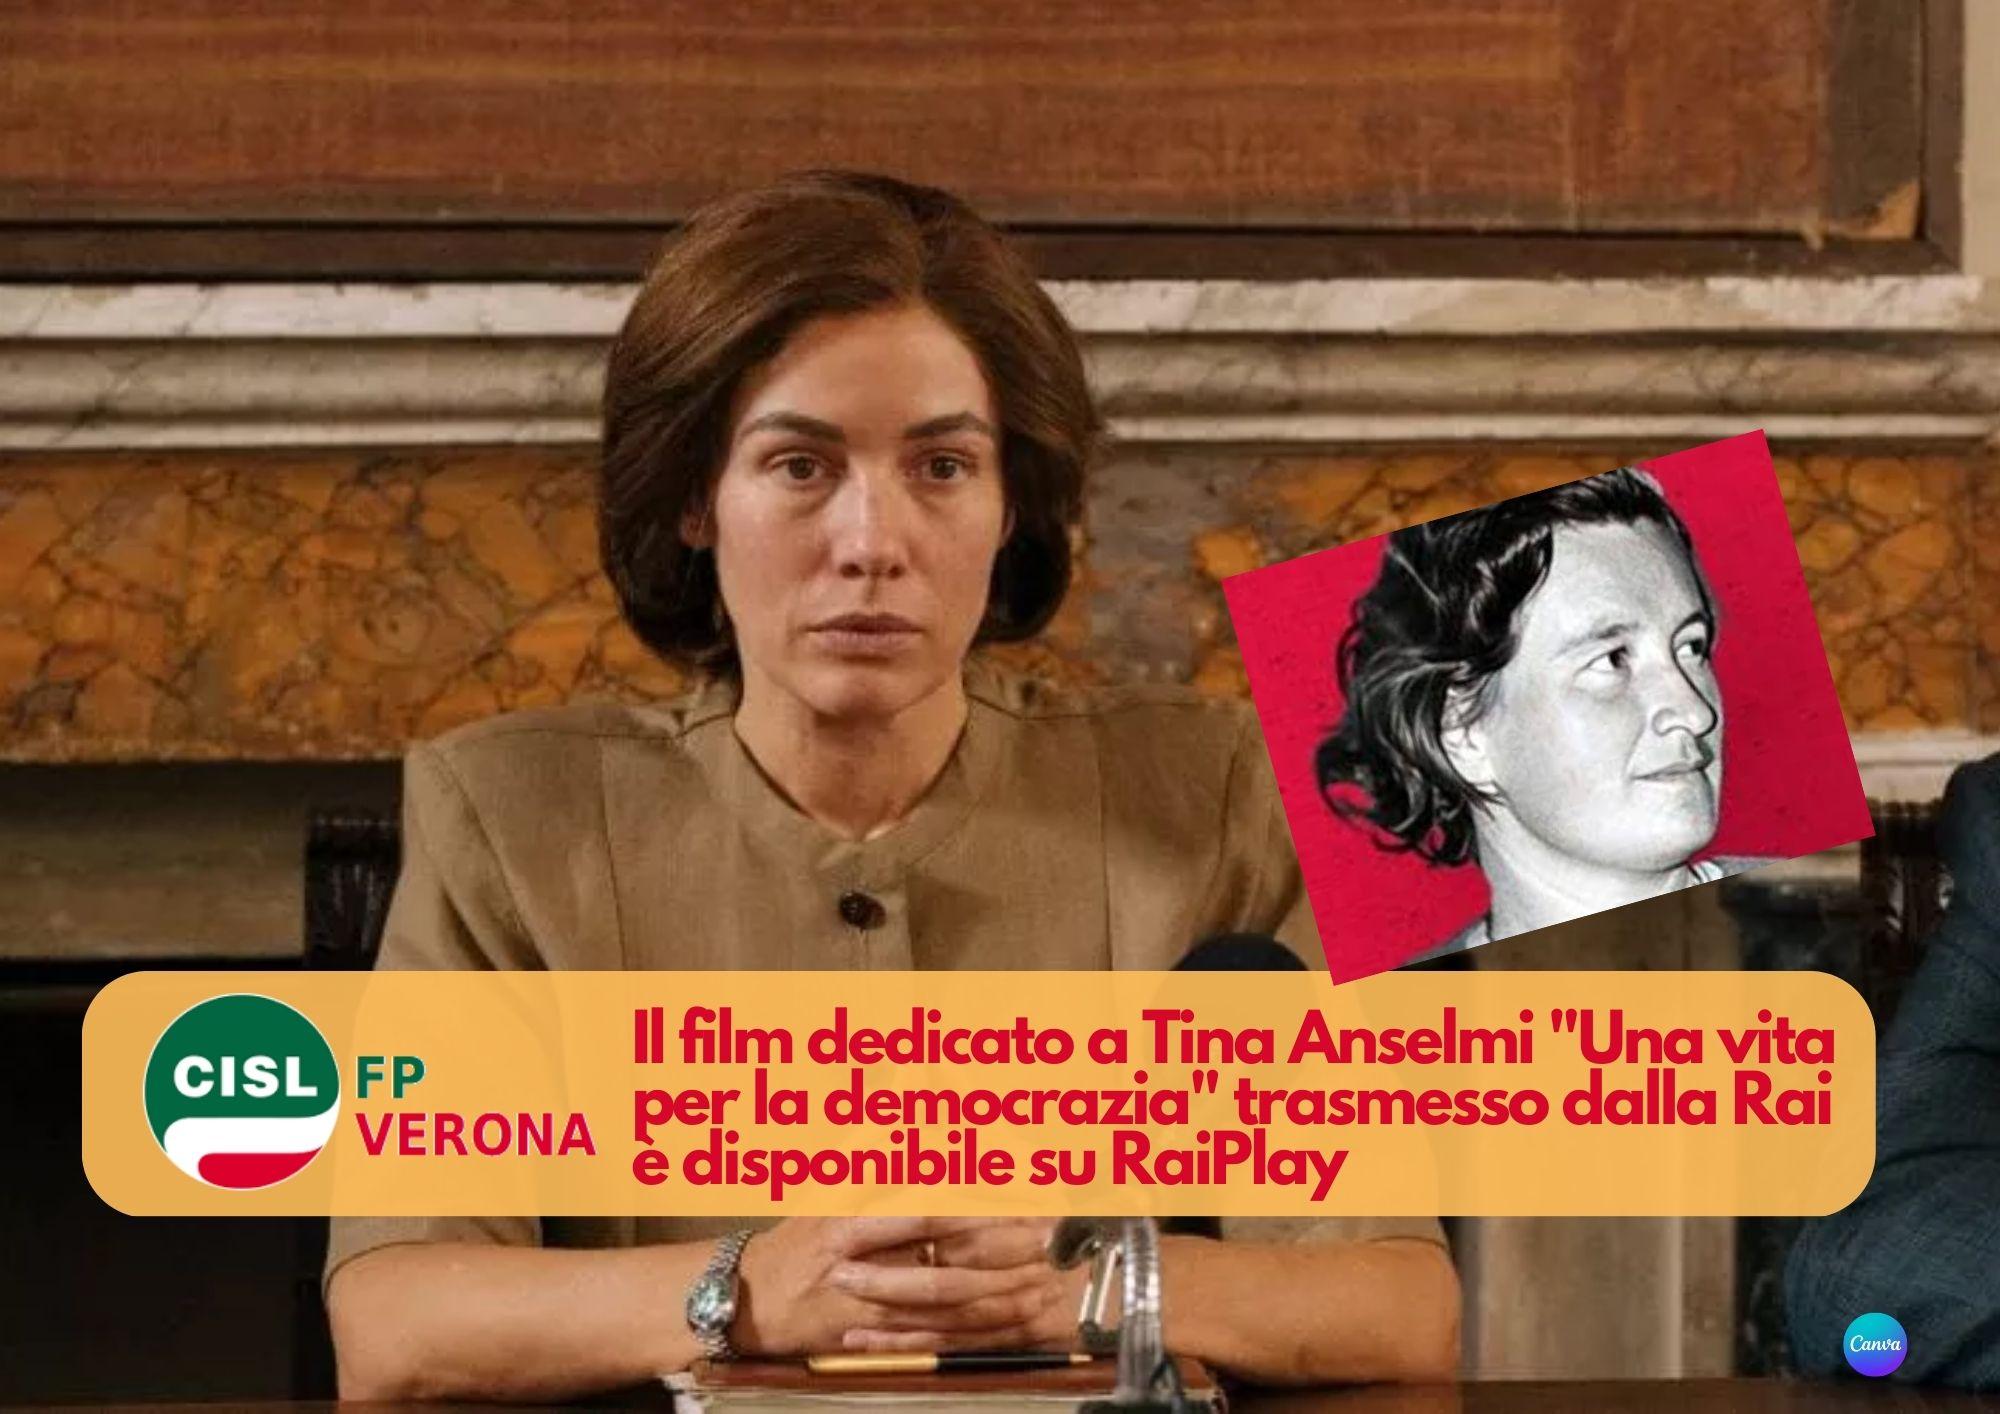 CISL FP Verona. A Tina Anselmi è dedicato il film di Luciano Manuzzi "Una vita per la democrazia"